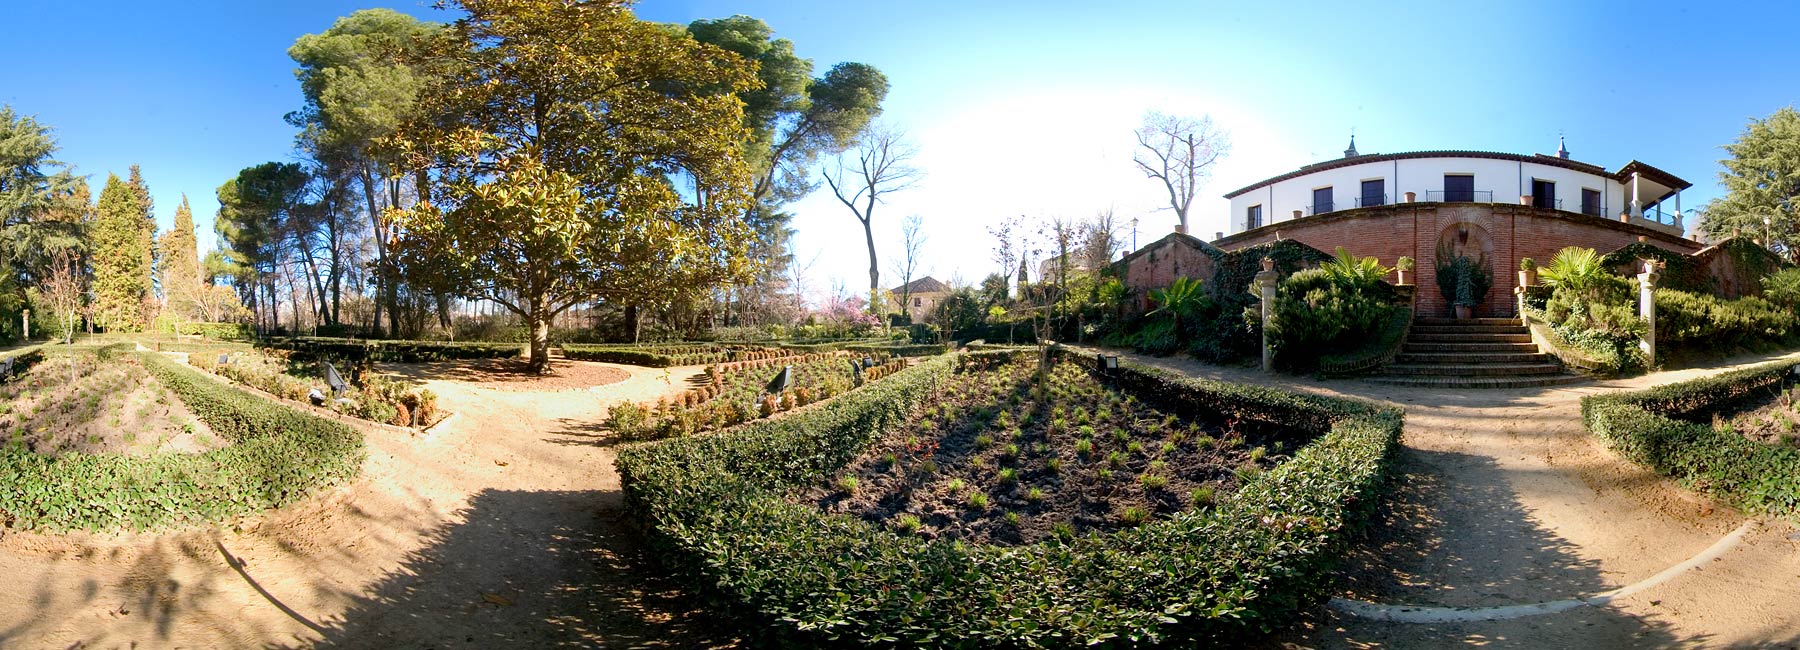 Visita virtual del Palacio de Godoy, jardines